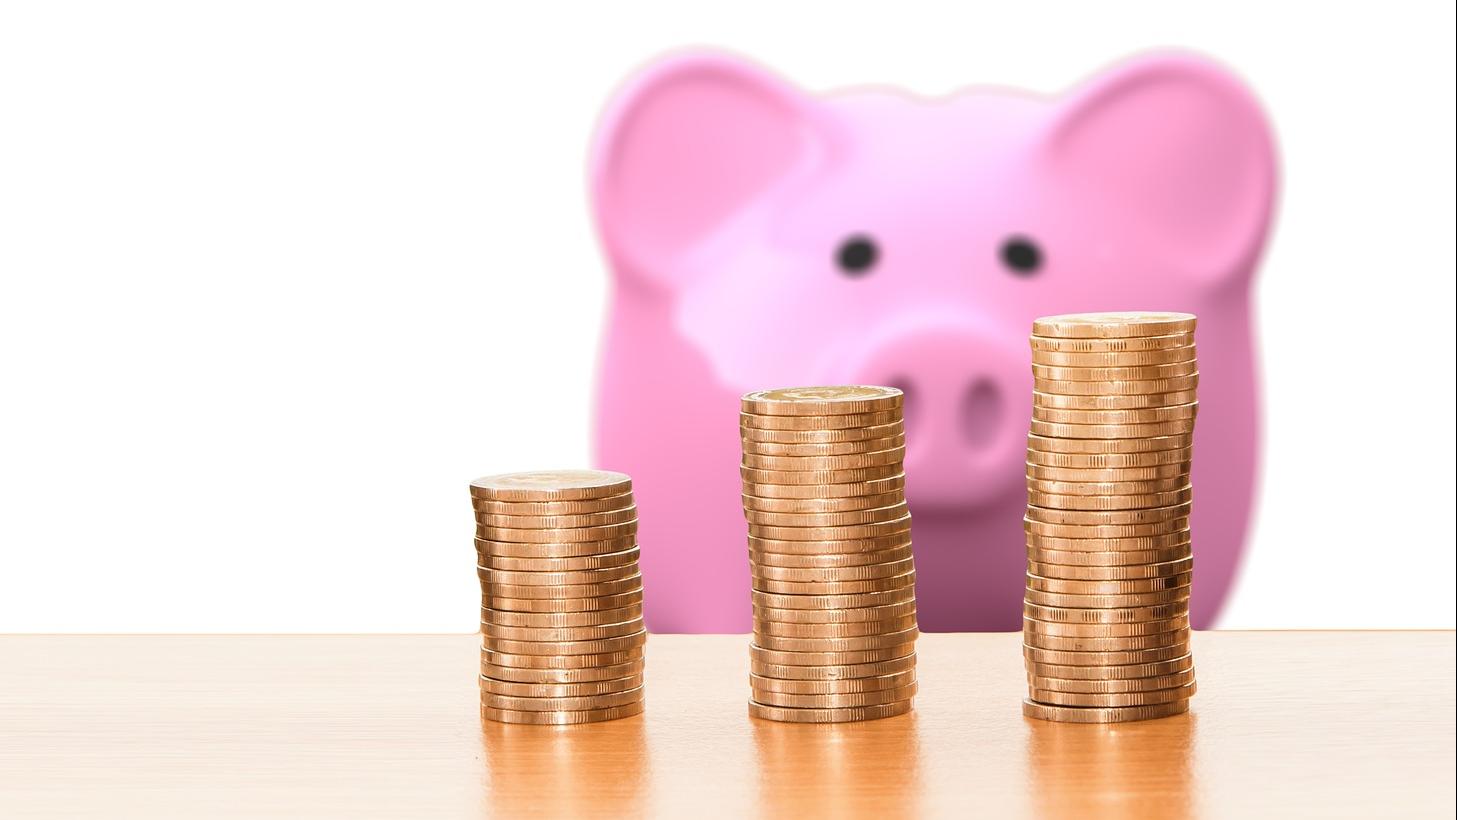 Stimmungsbild zum Beitrag: Es wird ein rosa Sparschwein mit Geldmünzen abgebildet.